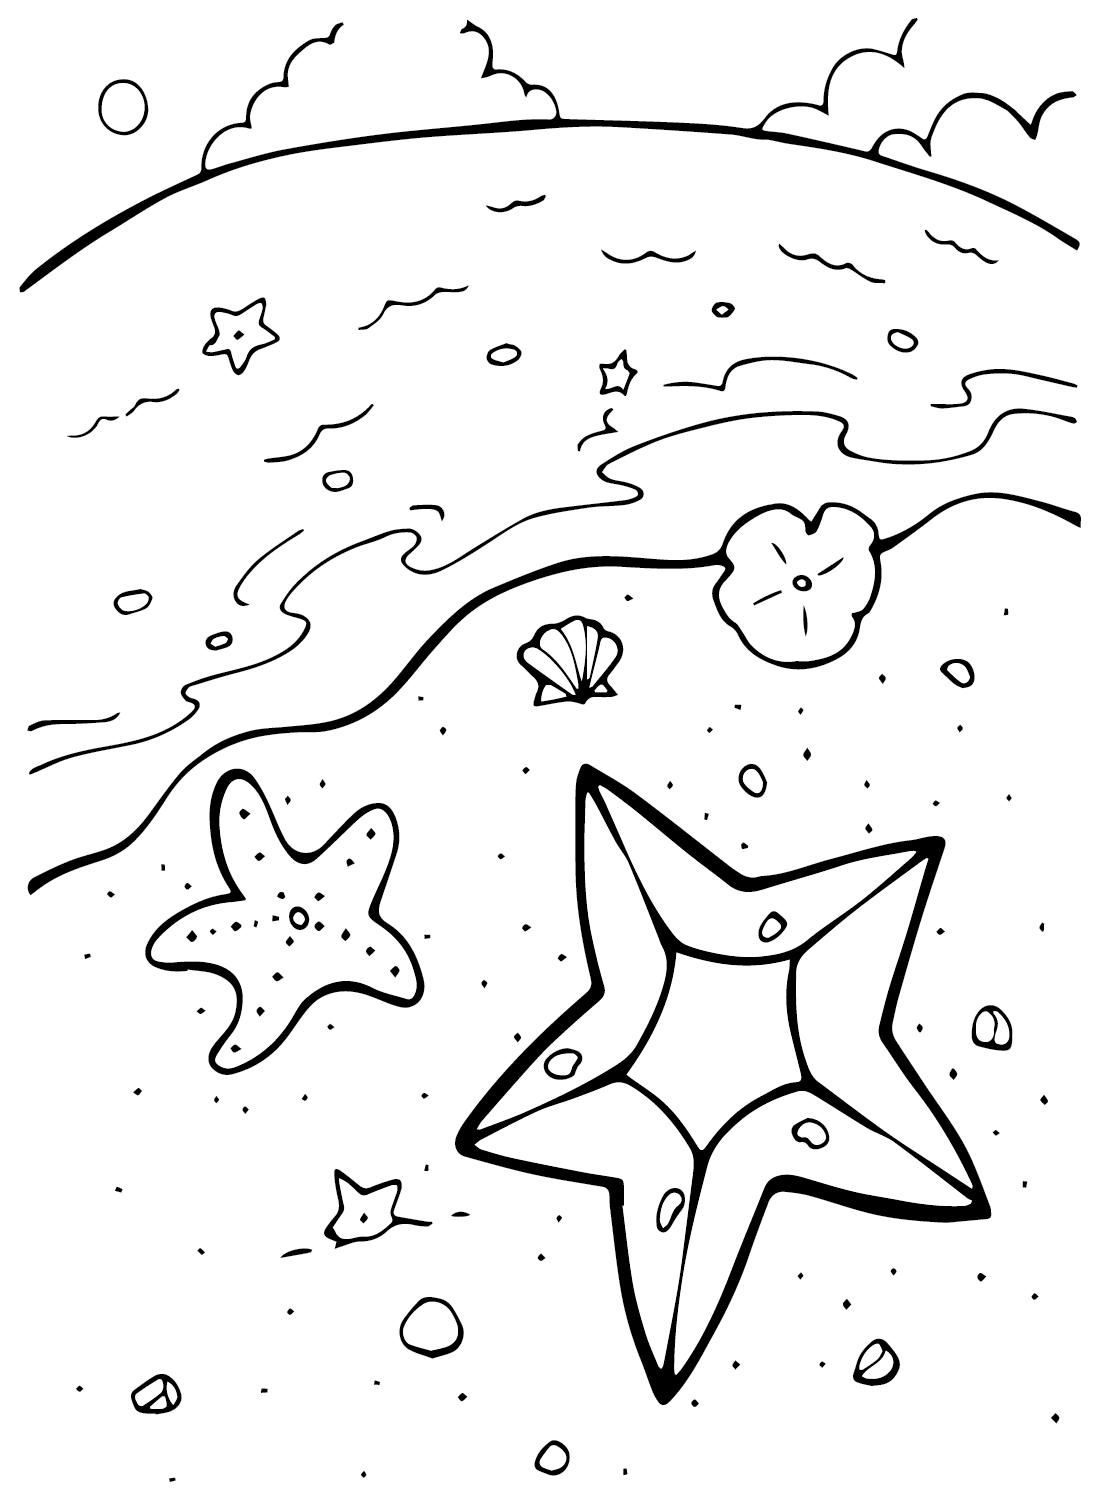 Desenho de estrela do mar de estrela do mar